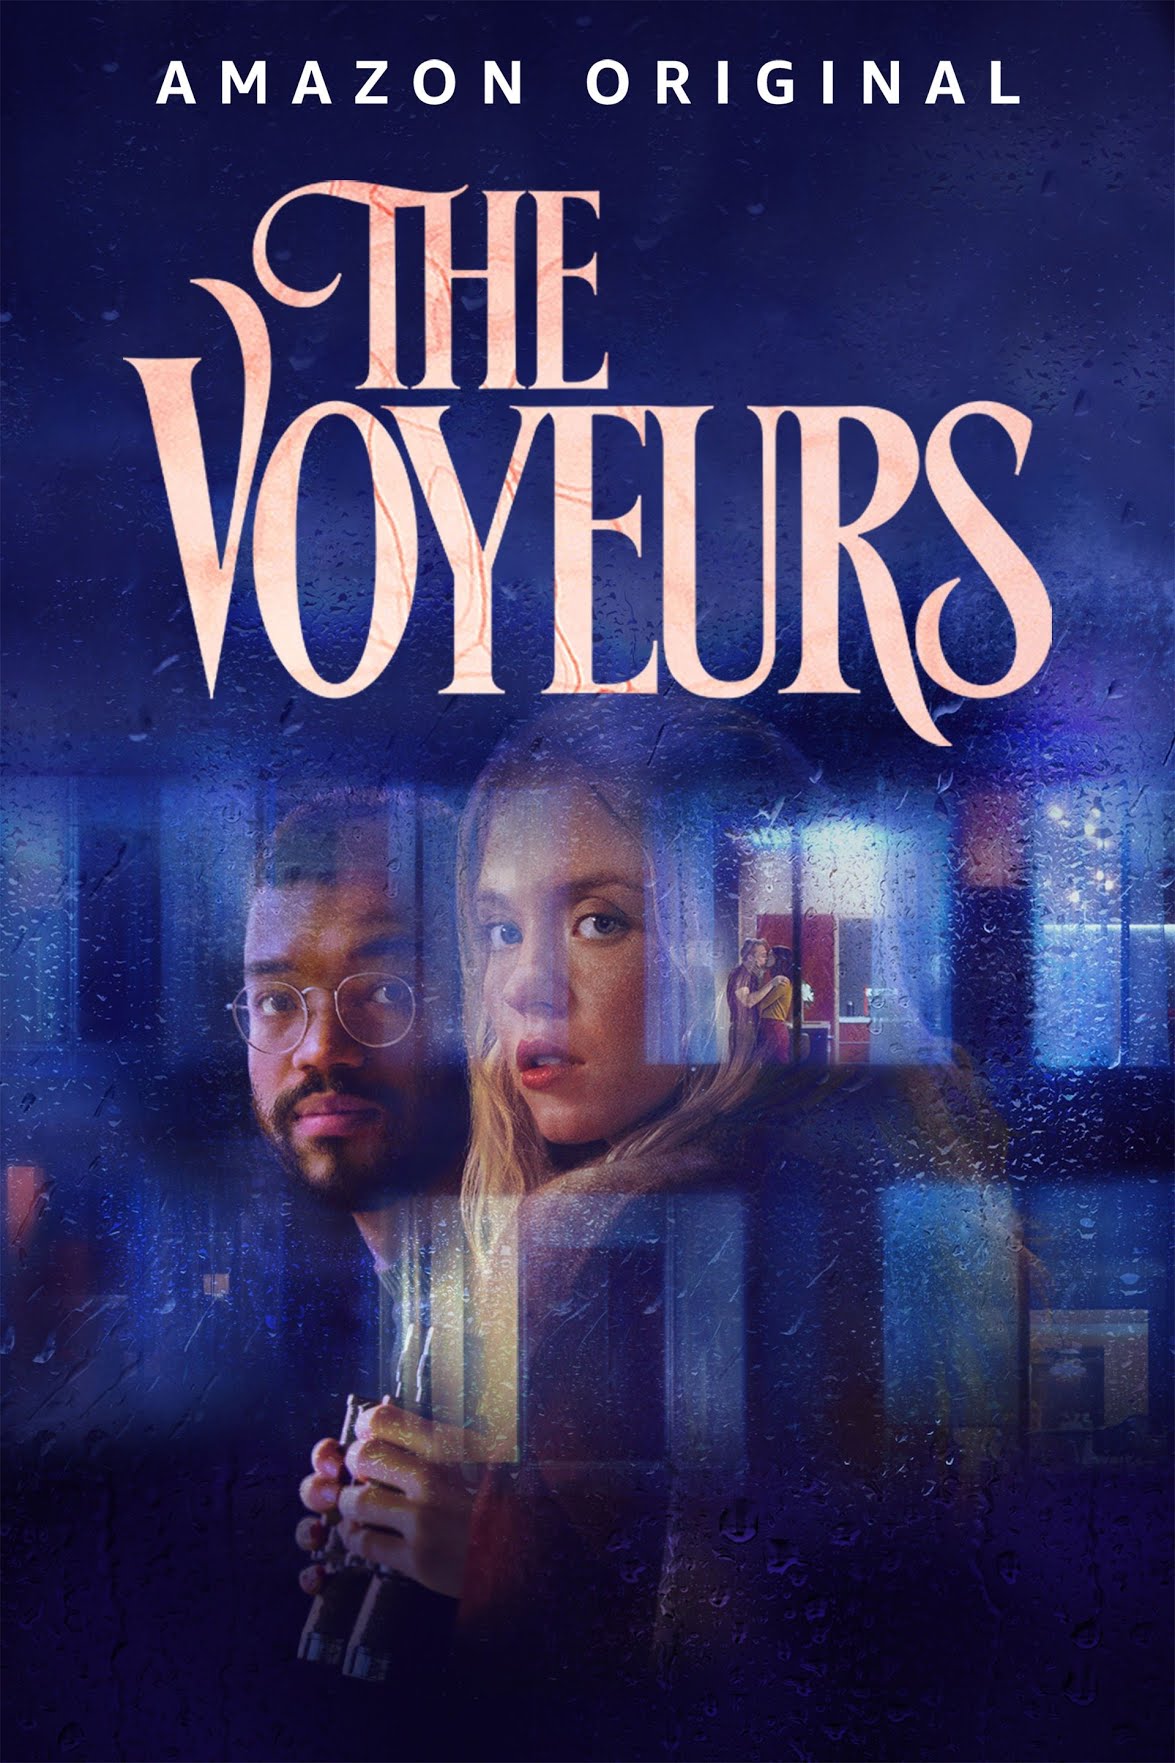 [ฝรั่ง] The Voyeurs (2021) ส่อง แส่ ซวย [1080p] [พากย์อังกฤษ 5.1] [Soundtrack บรรยายไทย + อังกฤษ] [เสียงอังกฤษ + ซับไทย] [PANDAFILE]